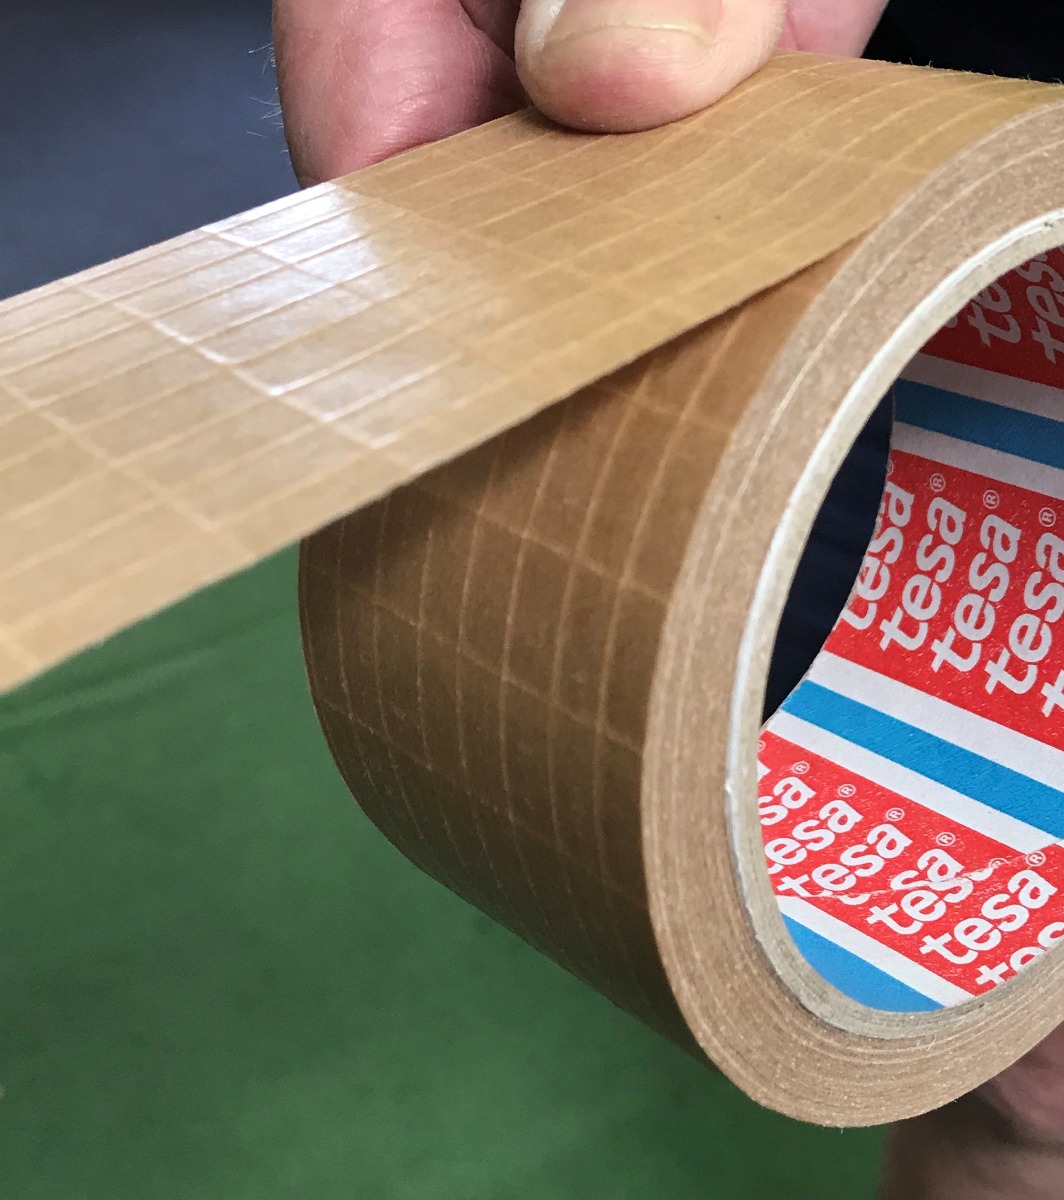 Reinforced Paper Packaging Tape - Tesa 60013